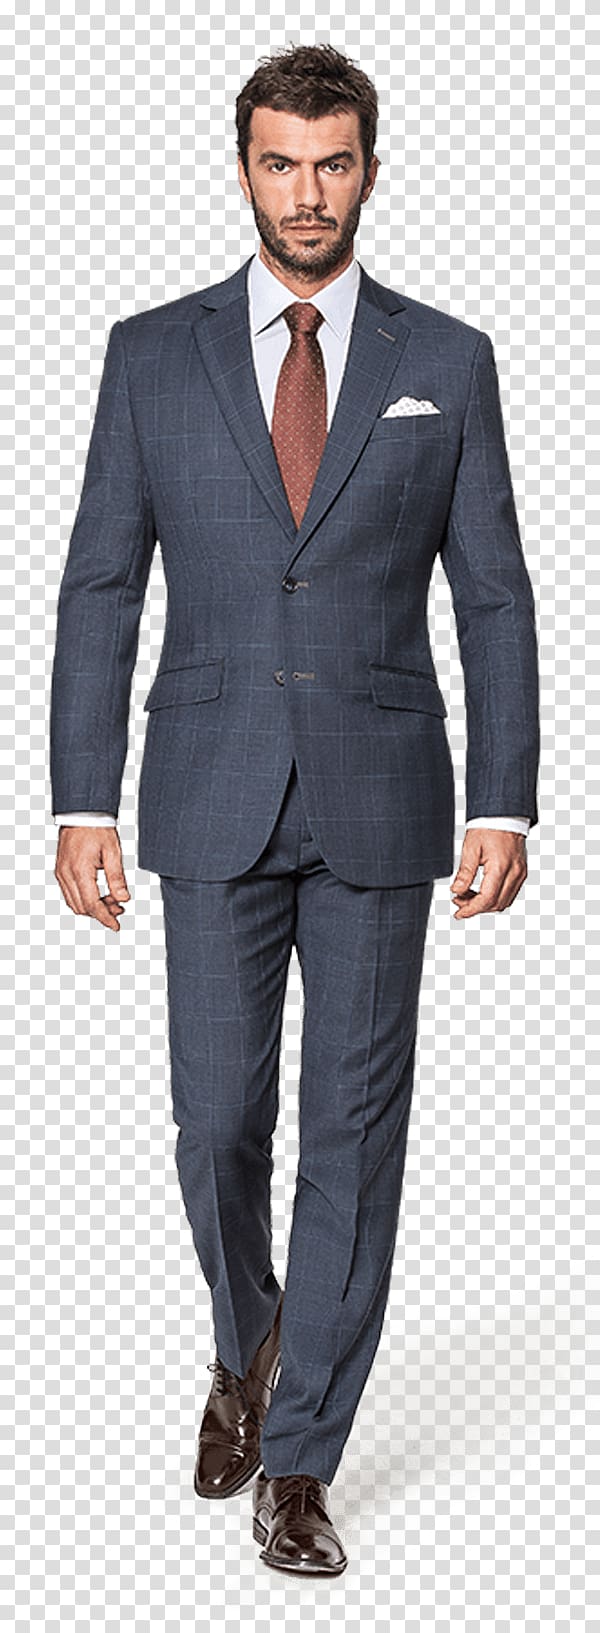 Suit Online shopping Tuxedo Navy blue, suit transparent background PNG clipart